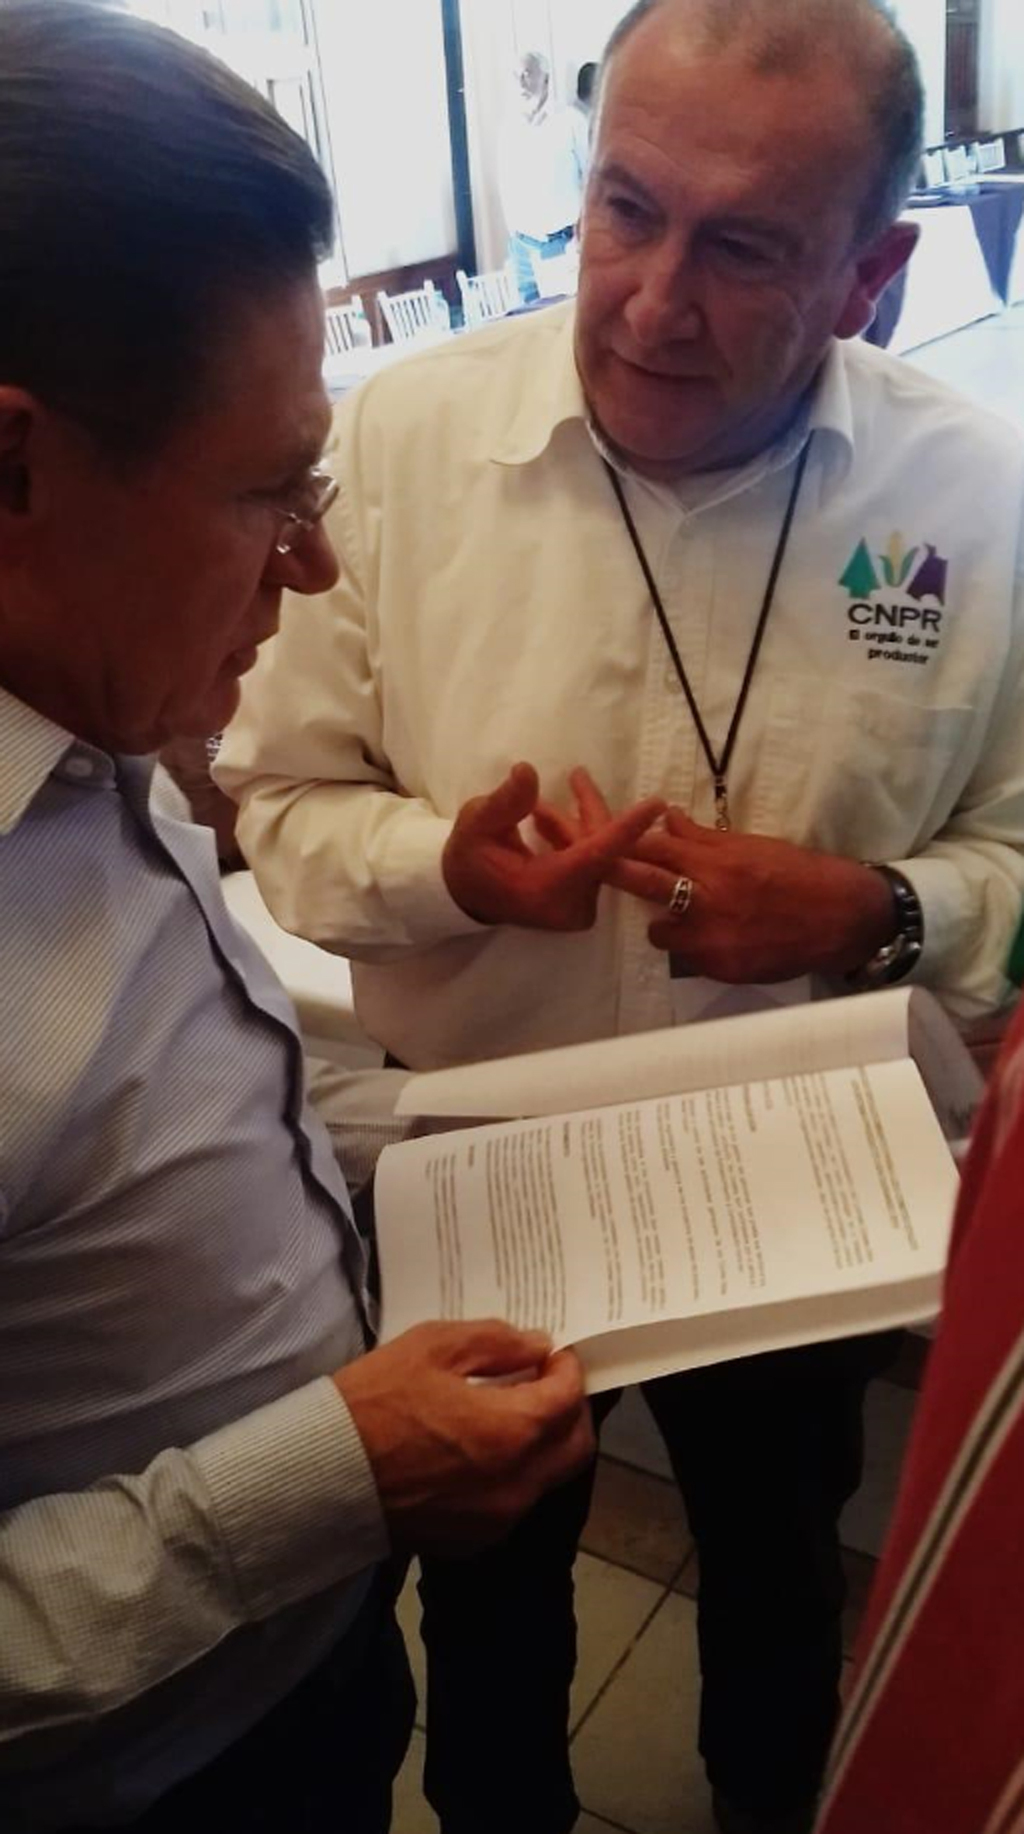 La Federación Estatal de Propietarios Rurales de Durango (CNPR) solicitó la intervención del gobernador José Rosas Aispuro. (CORTESÍA)